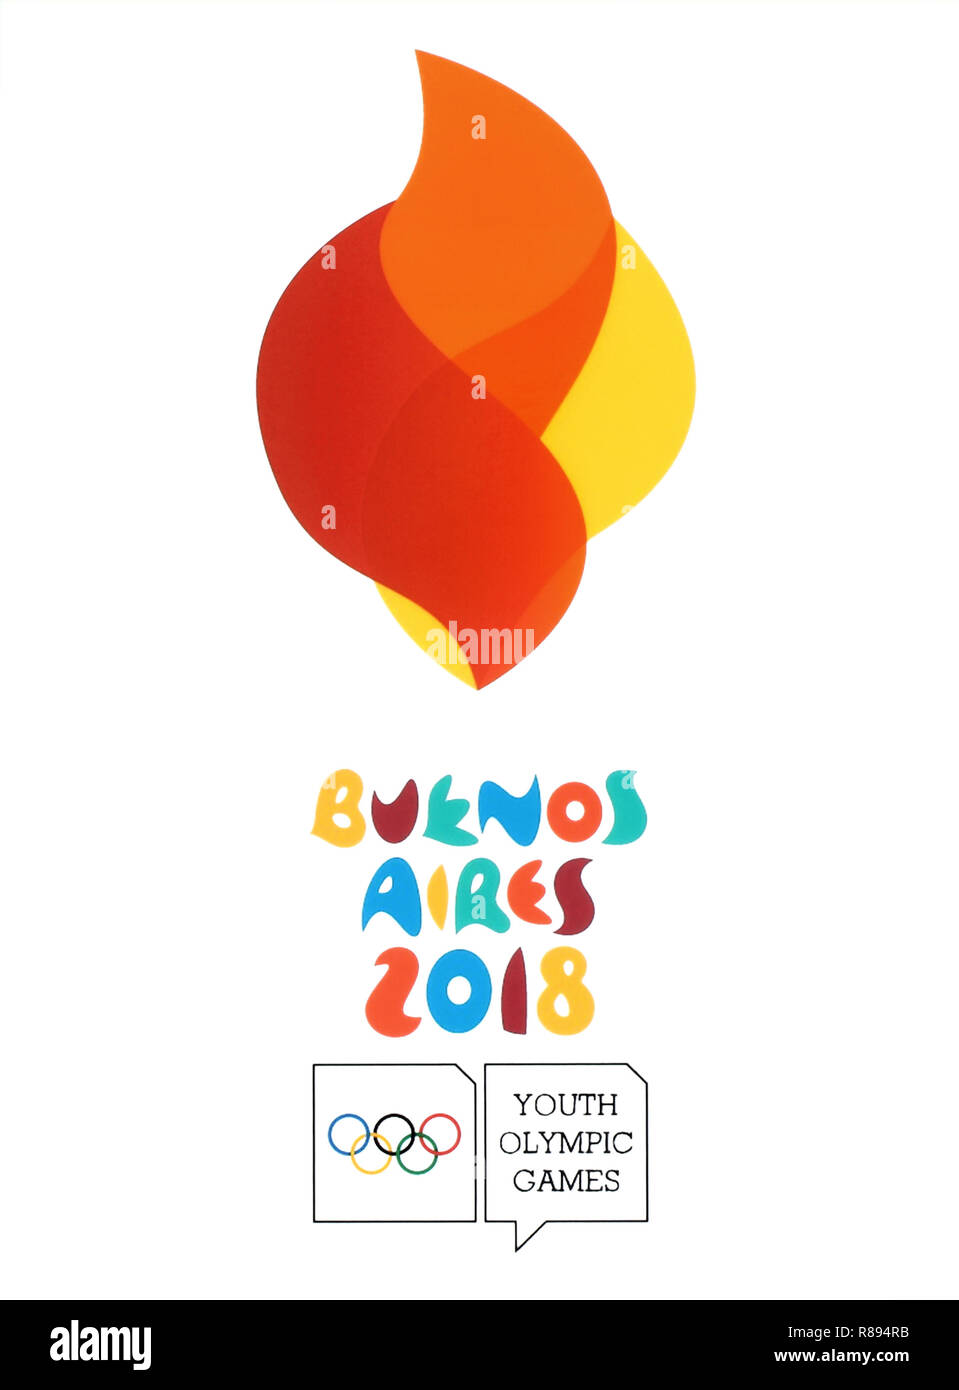 Kiev, Ucrania - Agosto 16, 2018: el logotipo de Buenos Aires 2018 Impreso en papel, Juegos Olímpicos juveniles de verano. Es un festival deportivo para adolescentes. Foto de stock